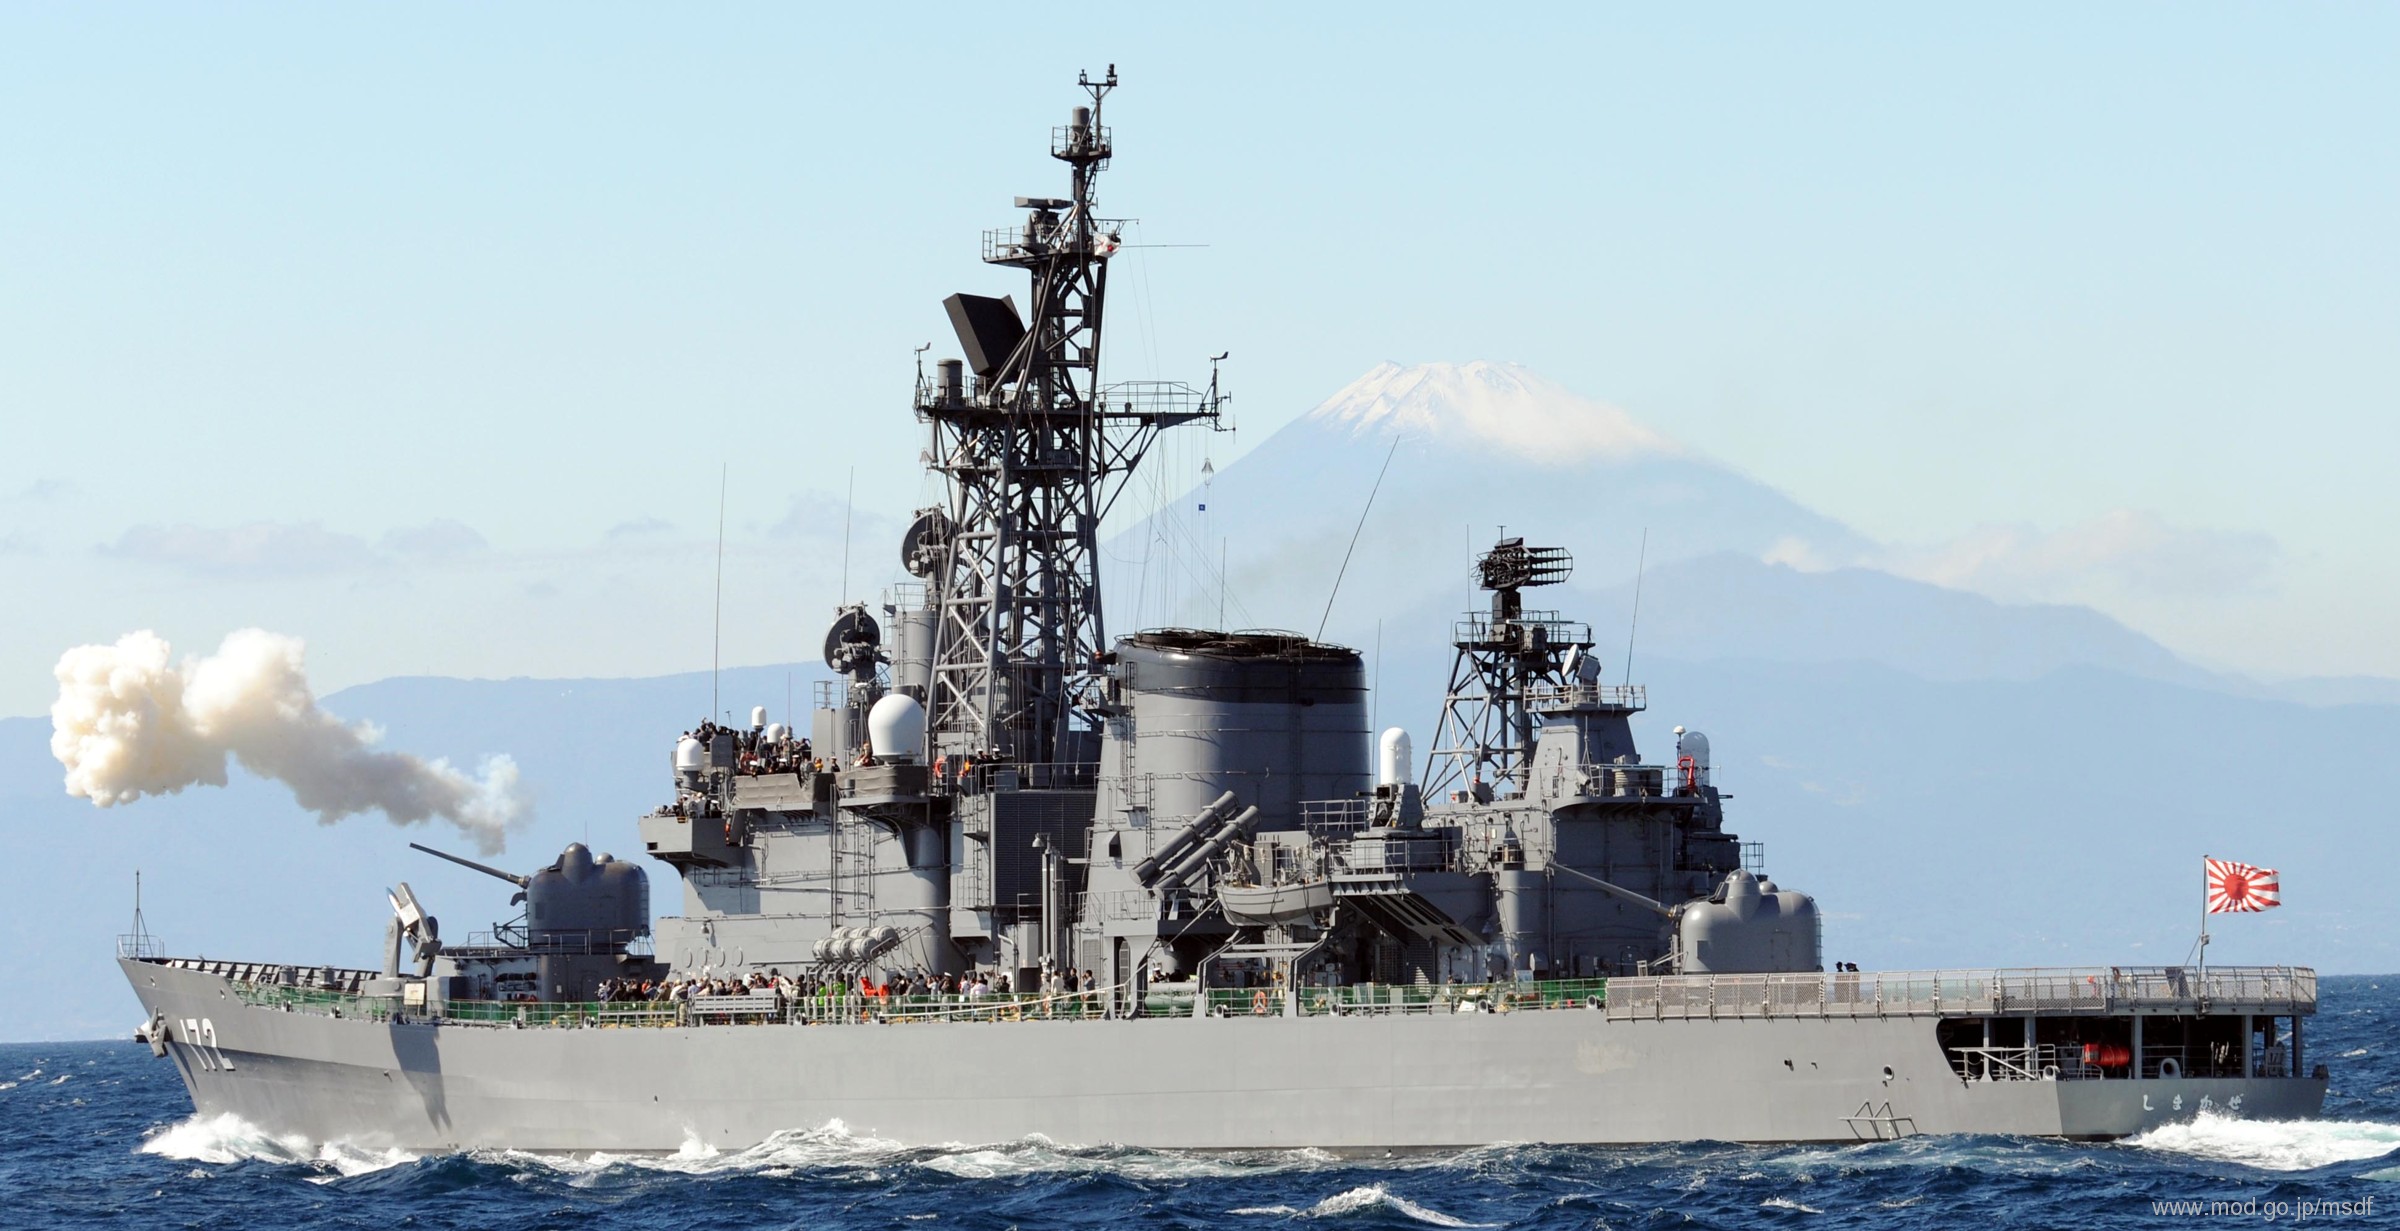 ddg-172 jds shimakaze hatakaze class guided missile destroyer japan maritime self defense force jmsdf 04